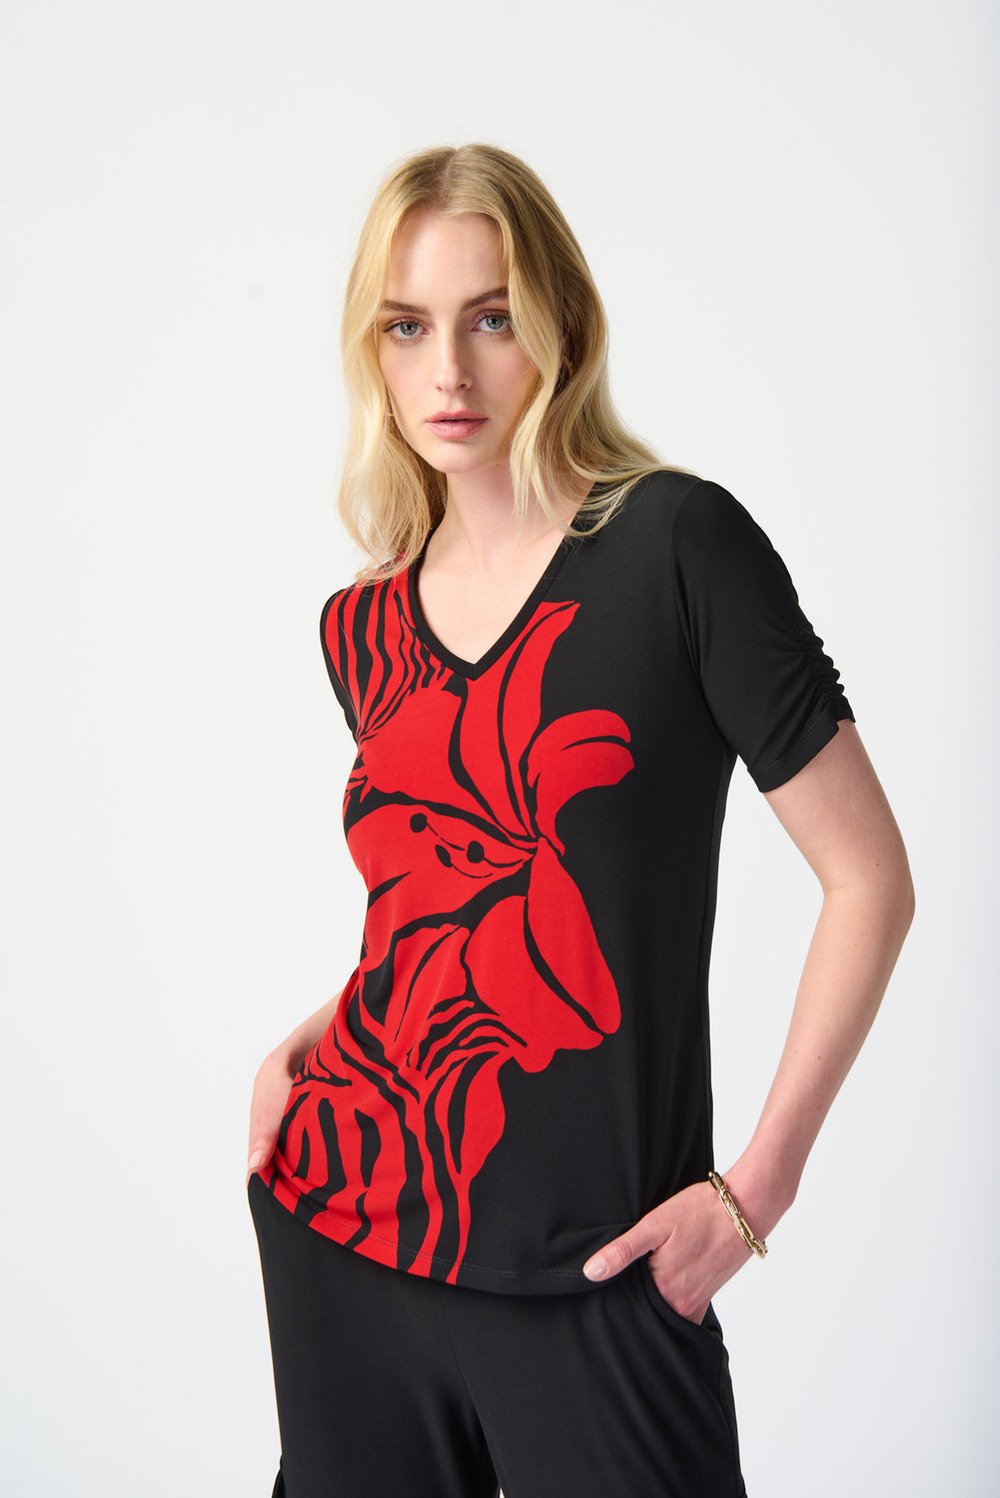 T-shirt fleuri, manches fronces modèle 241138. Black/red